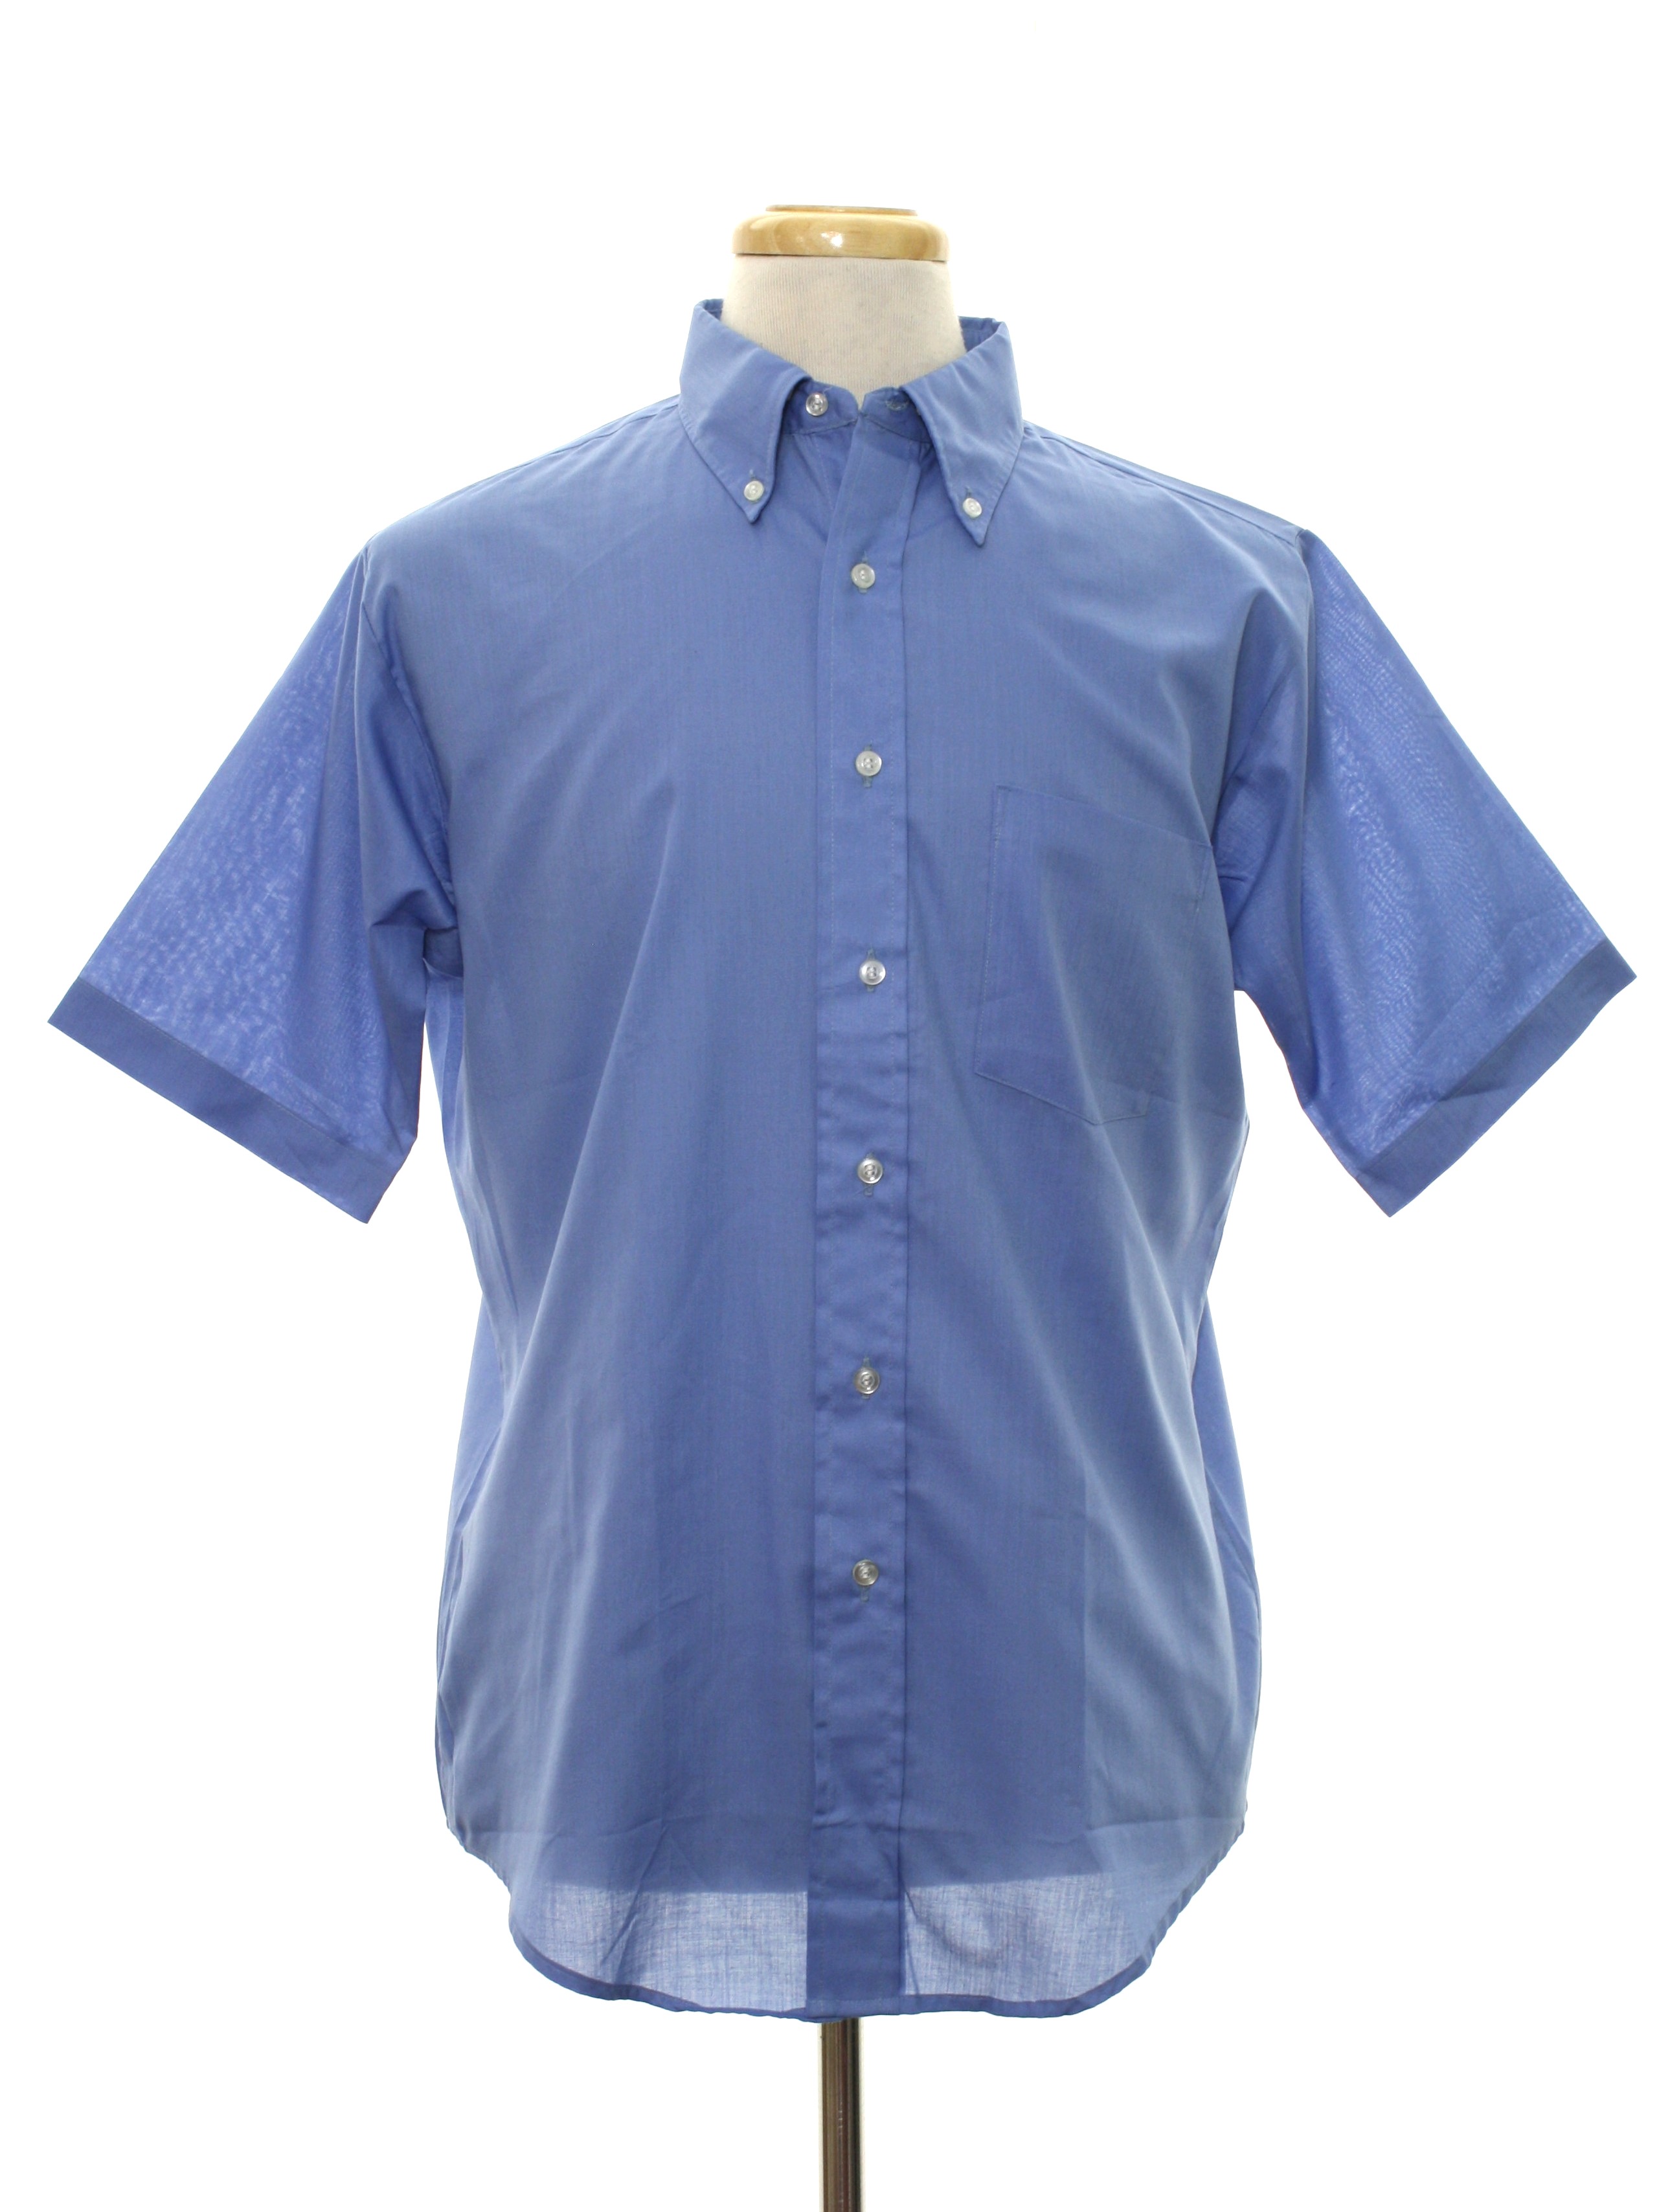 Retro S Shirt Puritan 60s Mens Sky Blue